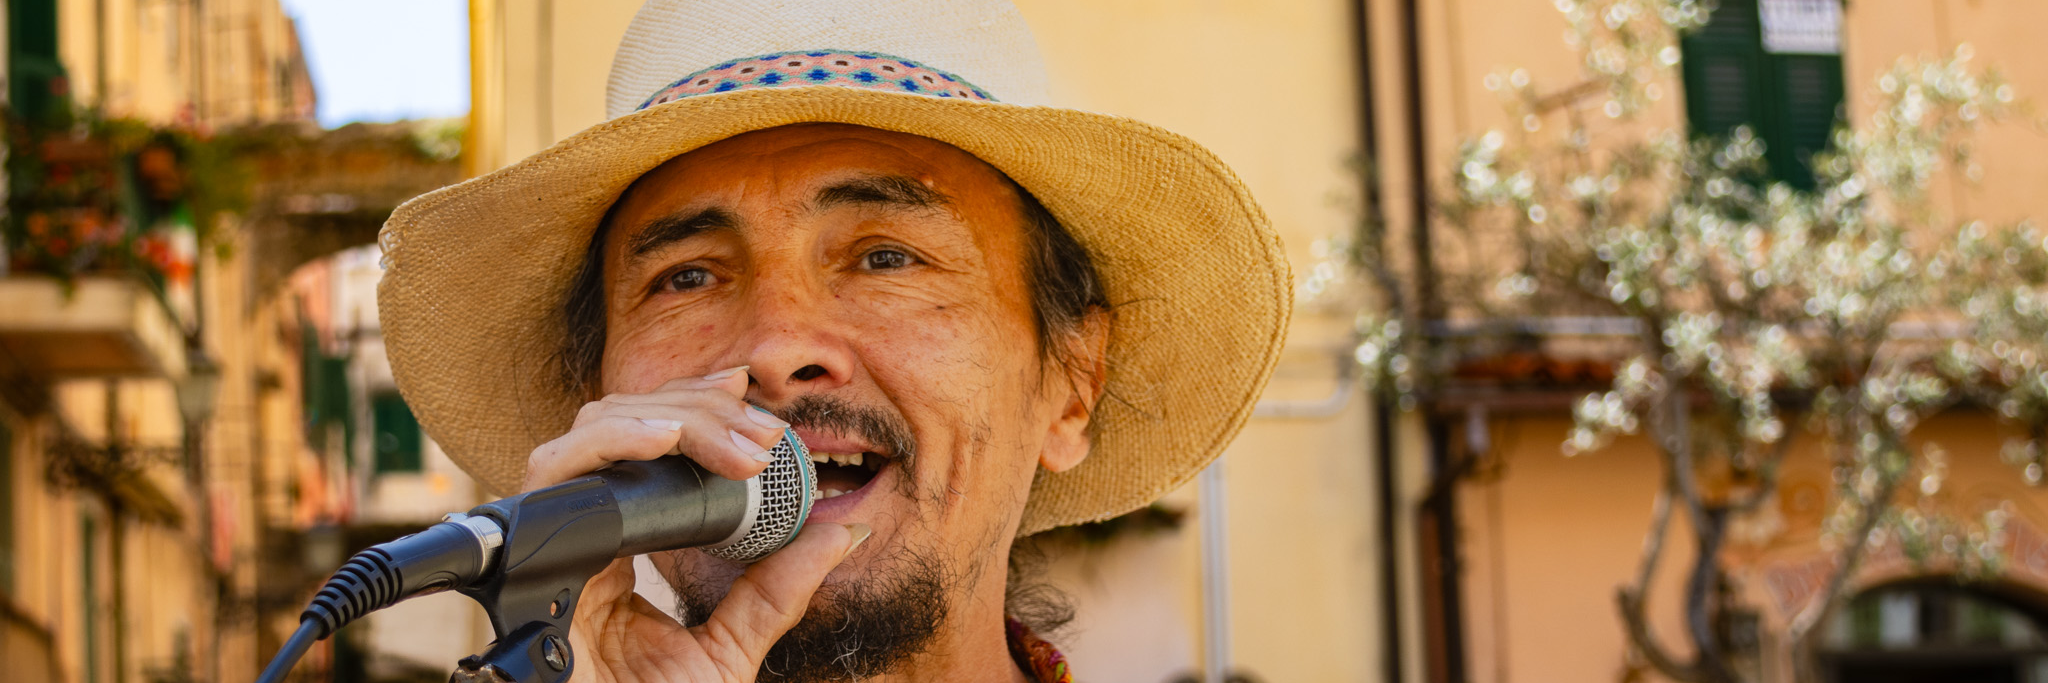 Eduardo Gil, musicien Latino en représentation à Alpes Maritimes - photo de couverture n° 1